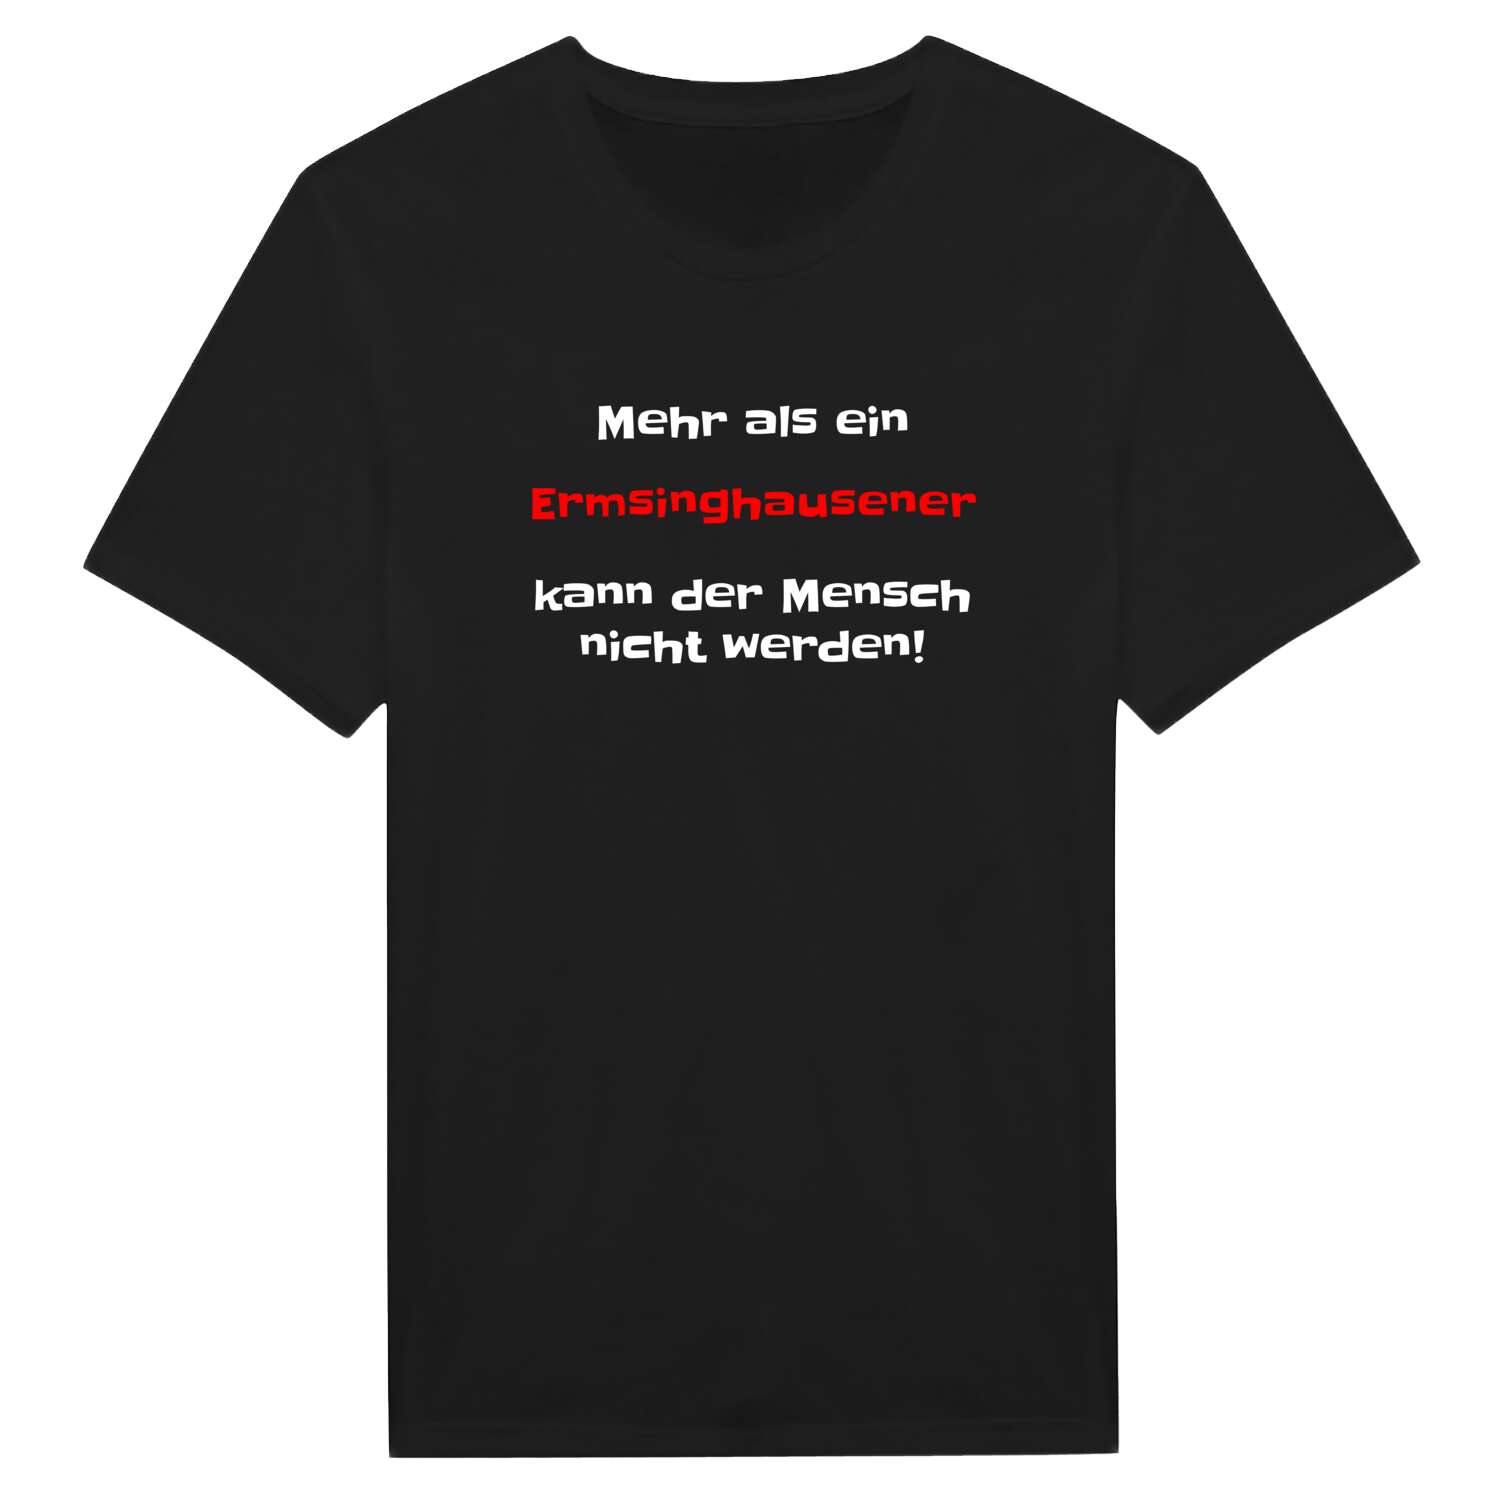 Ermsinghausen T-Shirt »Mehr als ein«